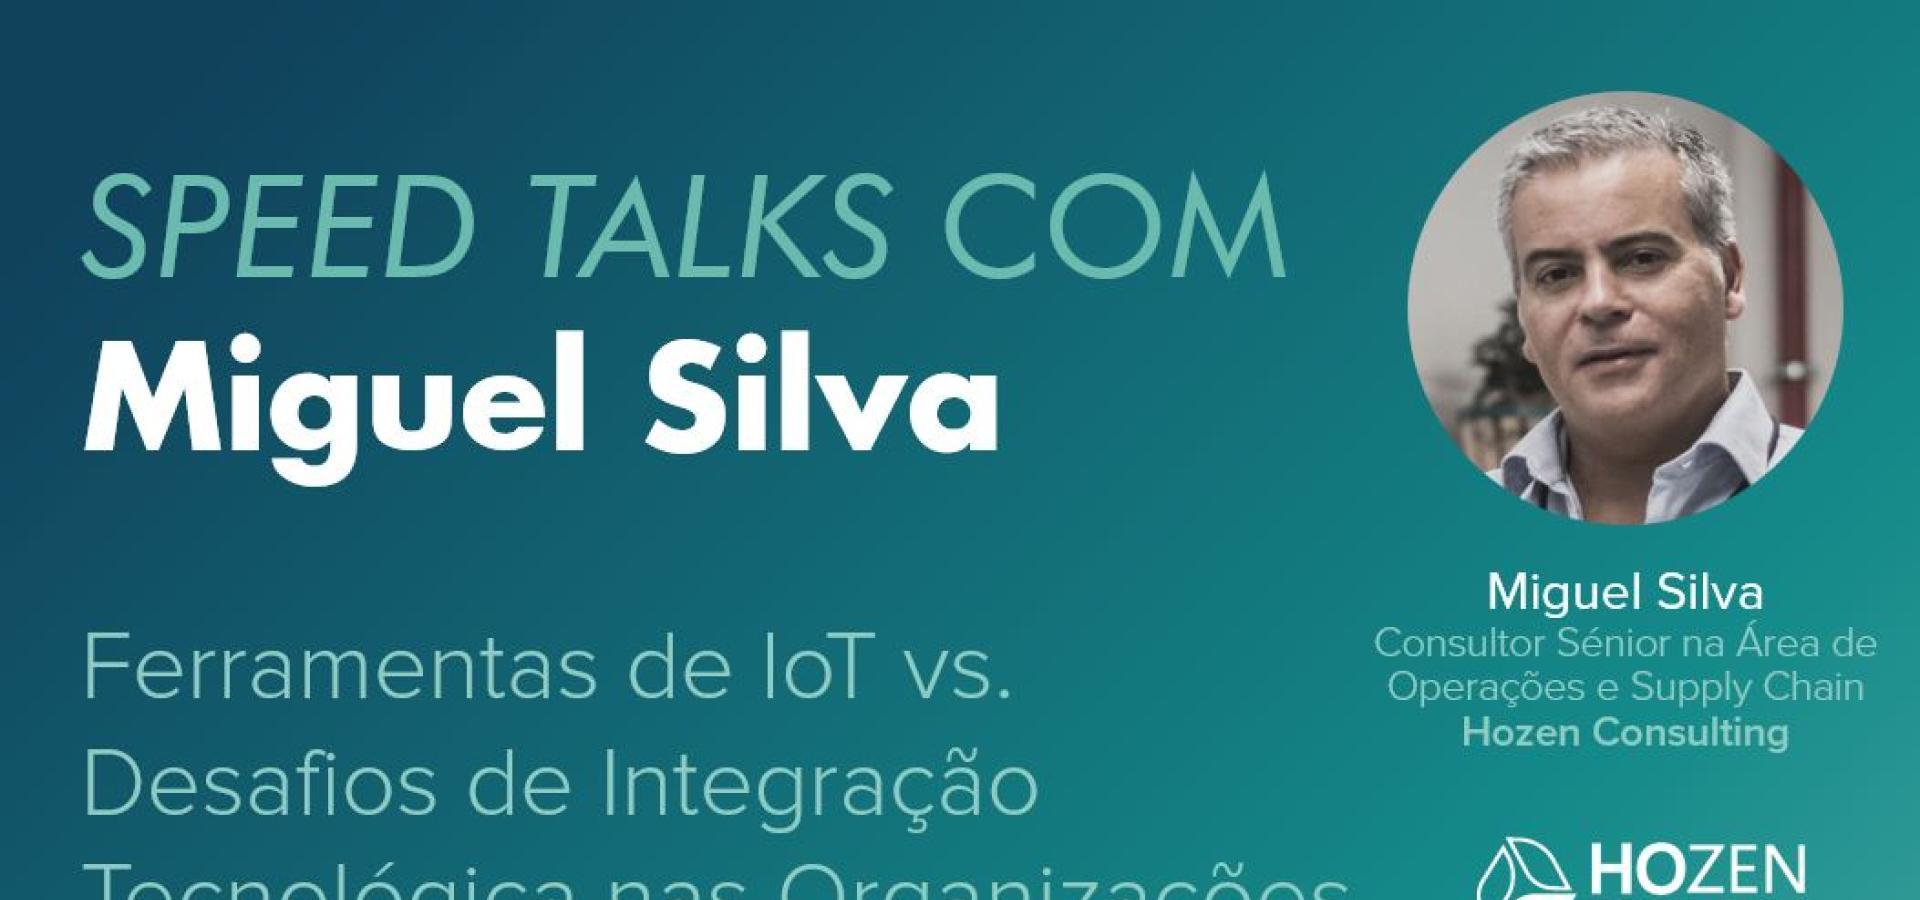 Speed Talks com Miguel Silva | Ferramentas de IoT vs. Desafios de Integração Tecnológica nas Organizações